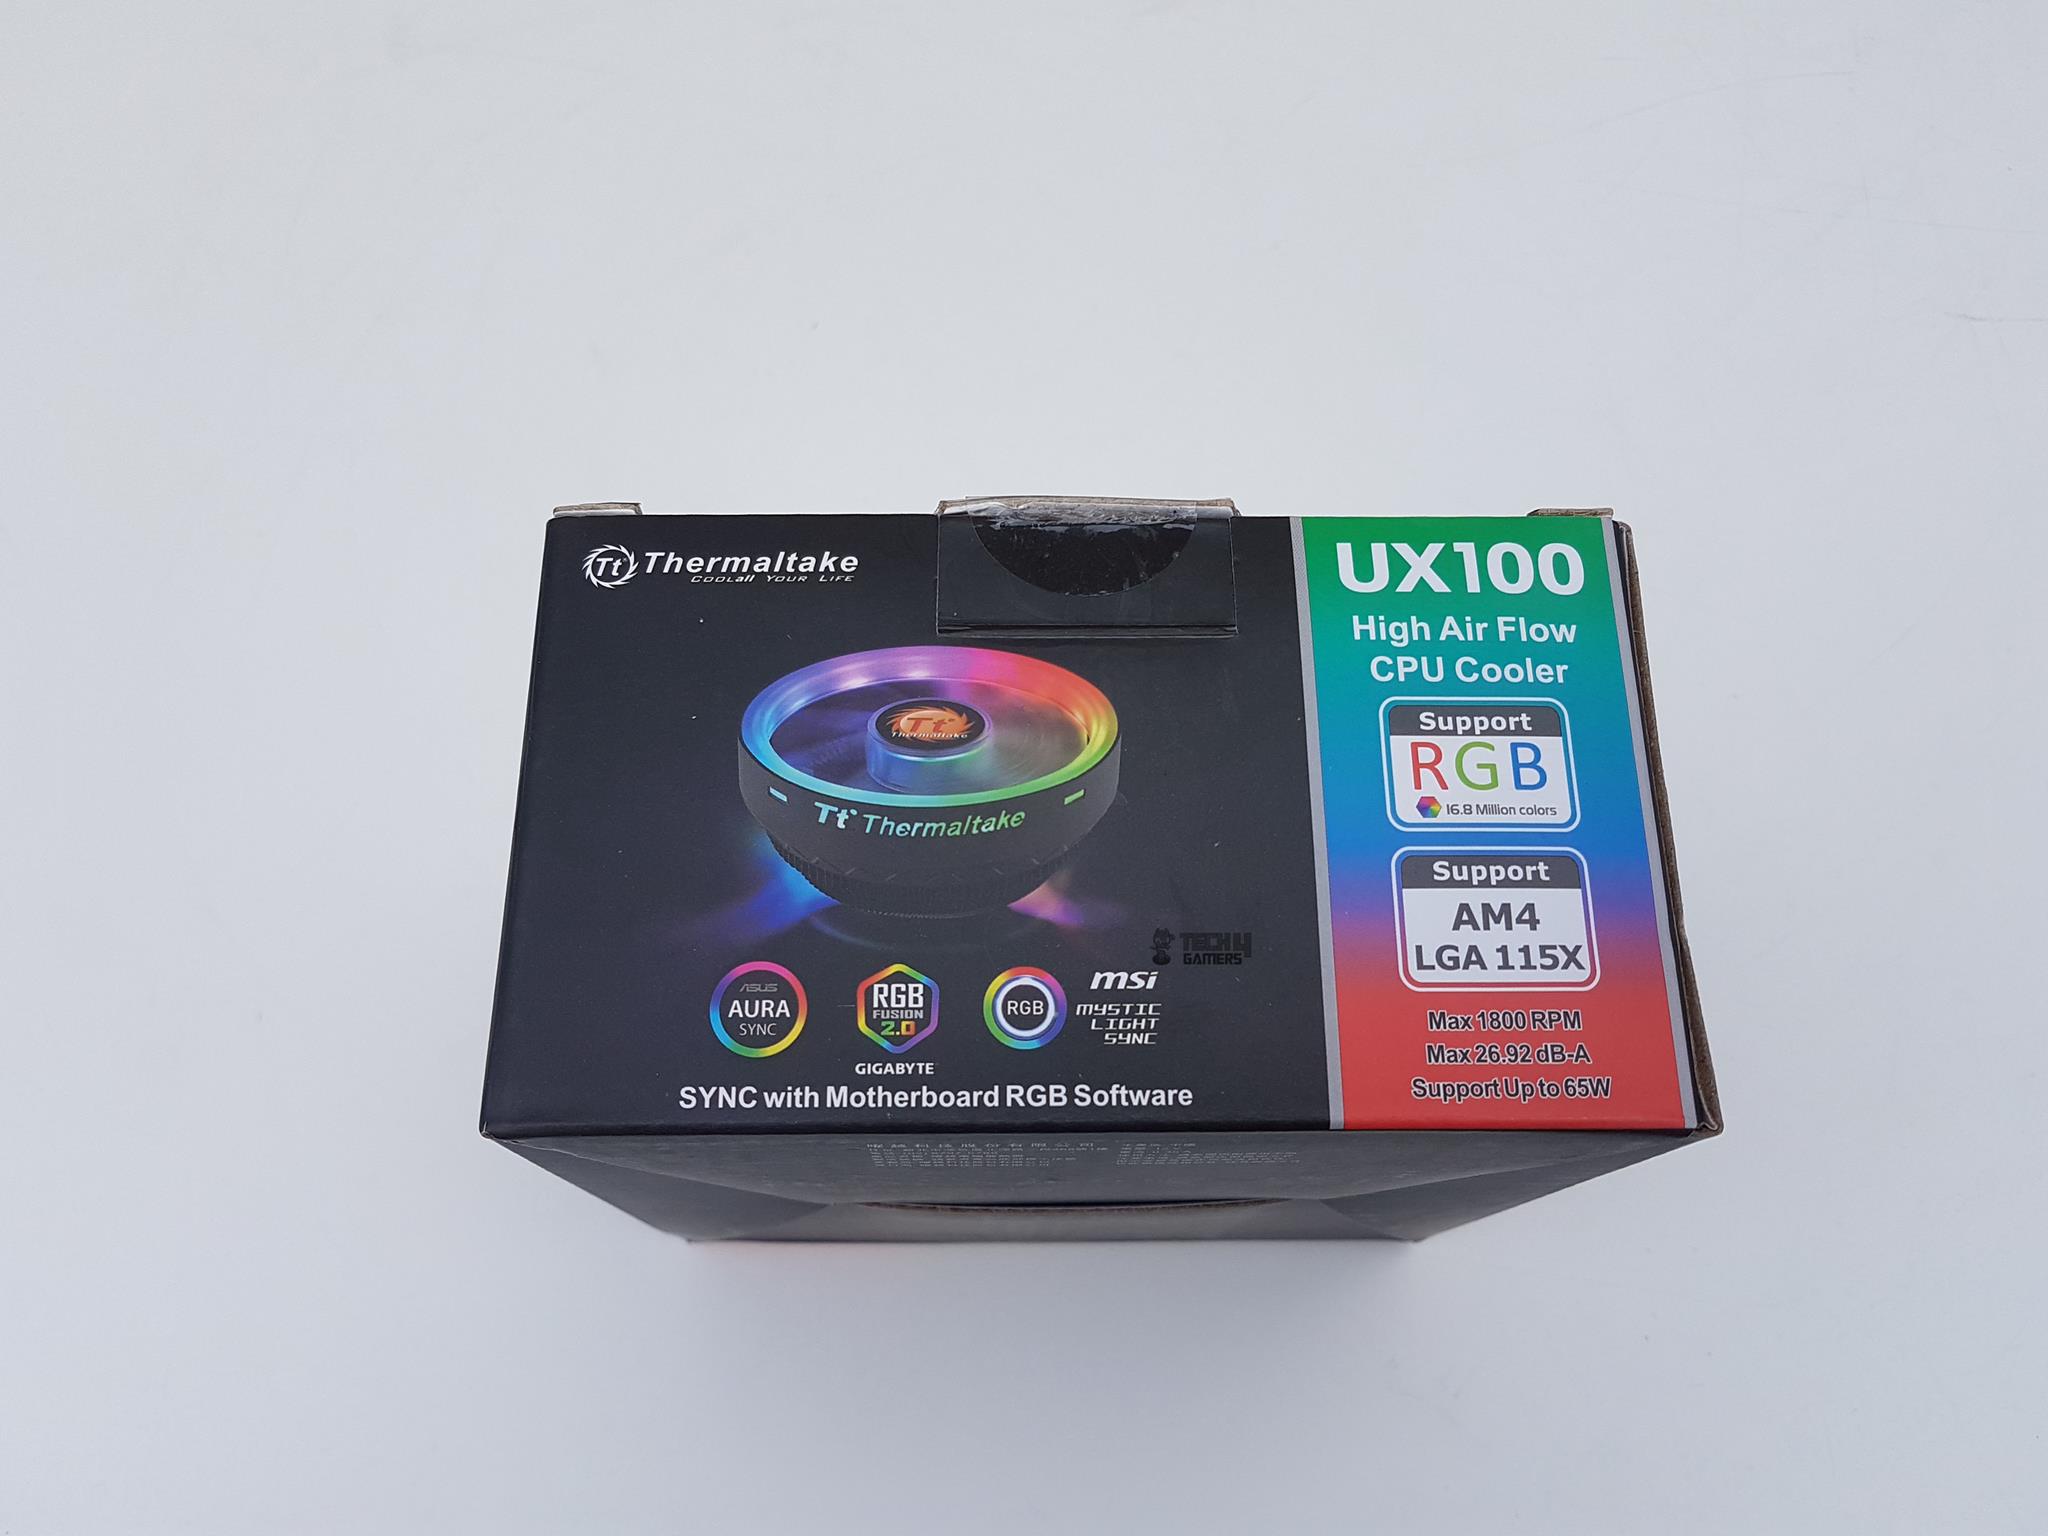 Thermaltake UX100 Packaging